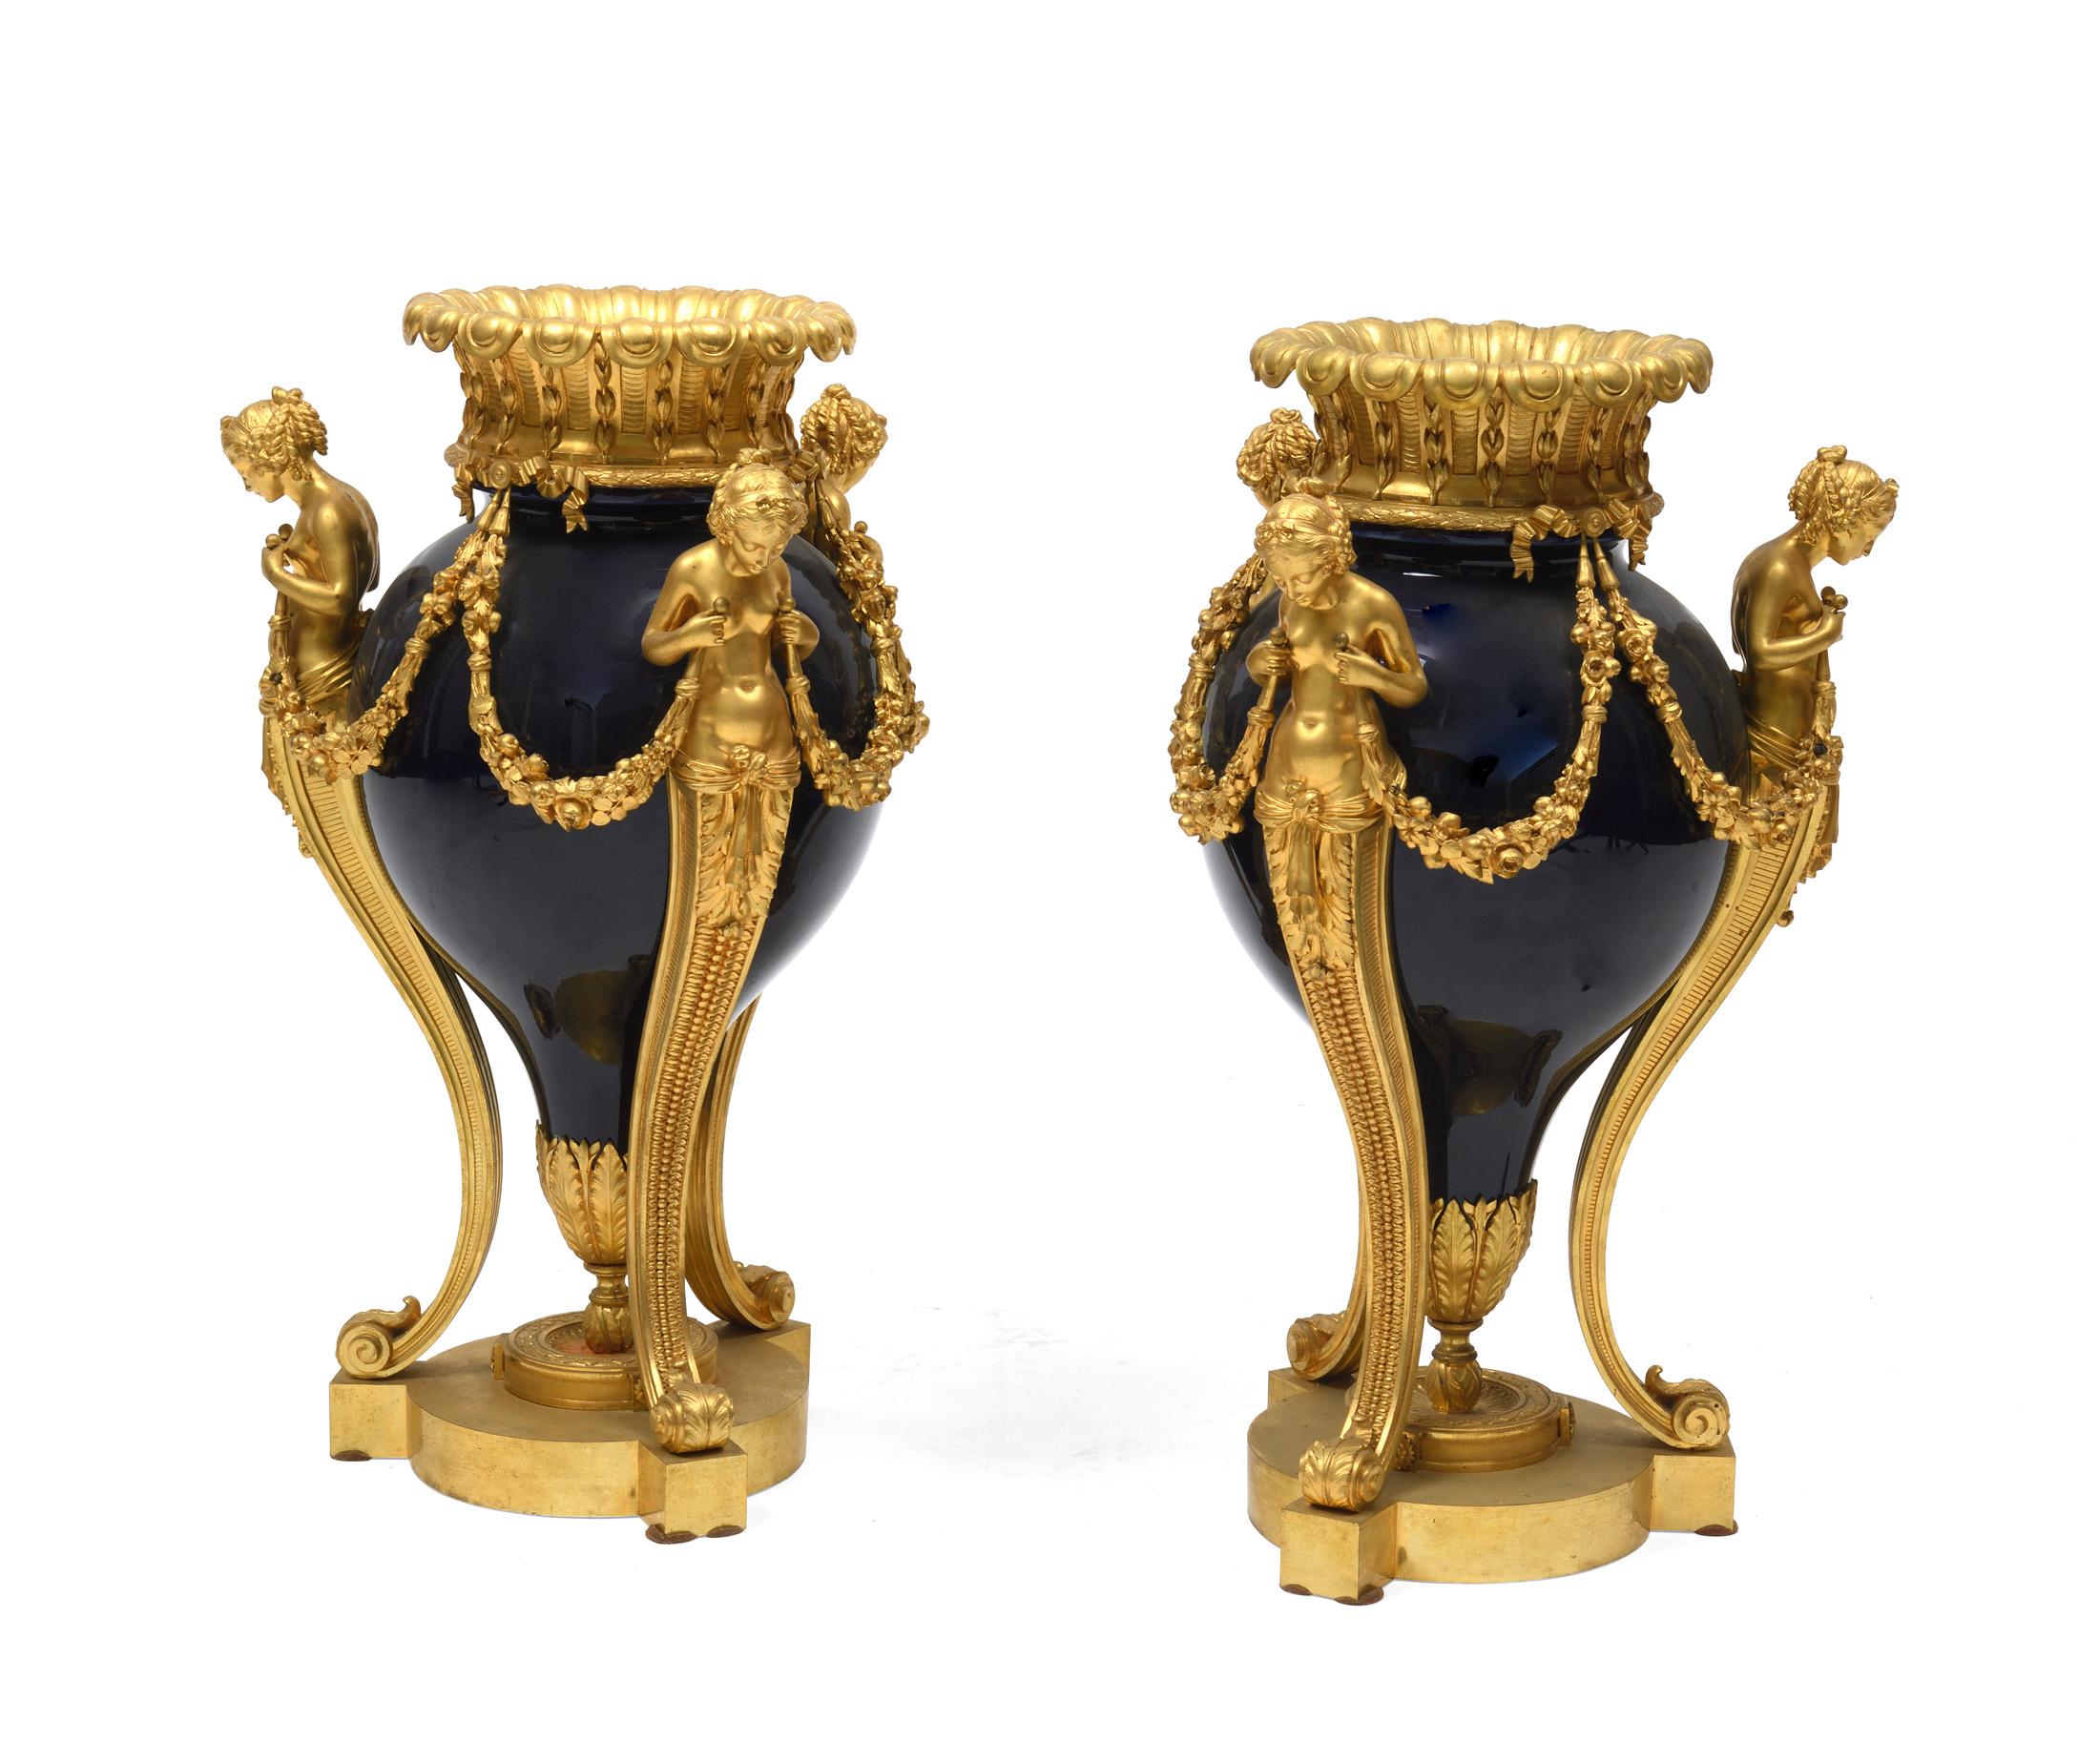 Paar Vasen aus Bronze und kobaltblauem Porzellan mit bronzenen Frauenköpfen an den Seiten. Die Bronze dieser Vasen ist von großer Qualität. Kein Zeichen, aber sie wurde sicher von einem großen Bronzier dieser Pariser Zeit gemacht.
Dieses Modell ist